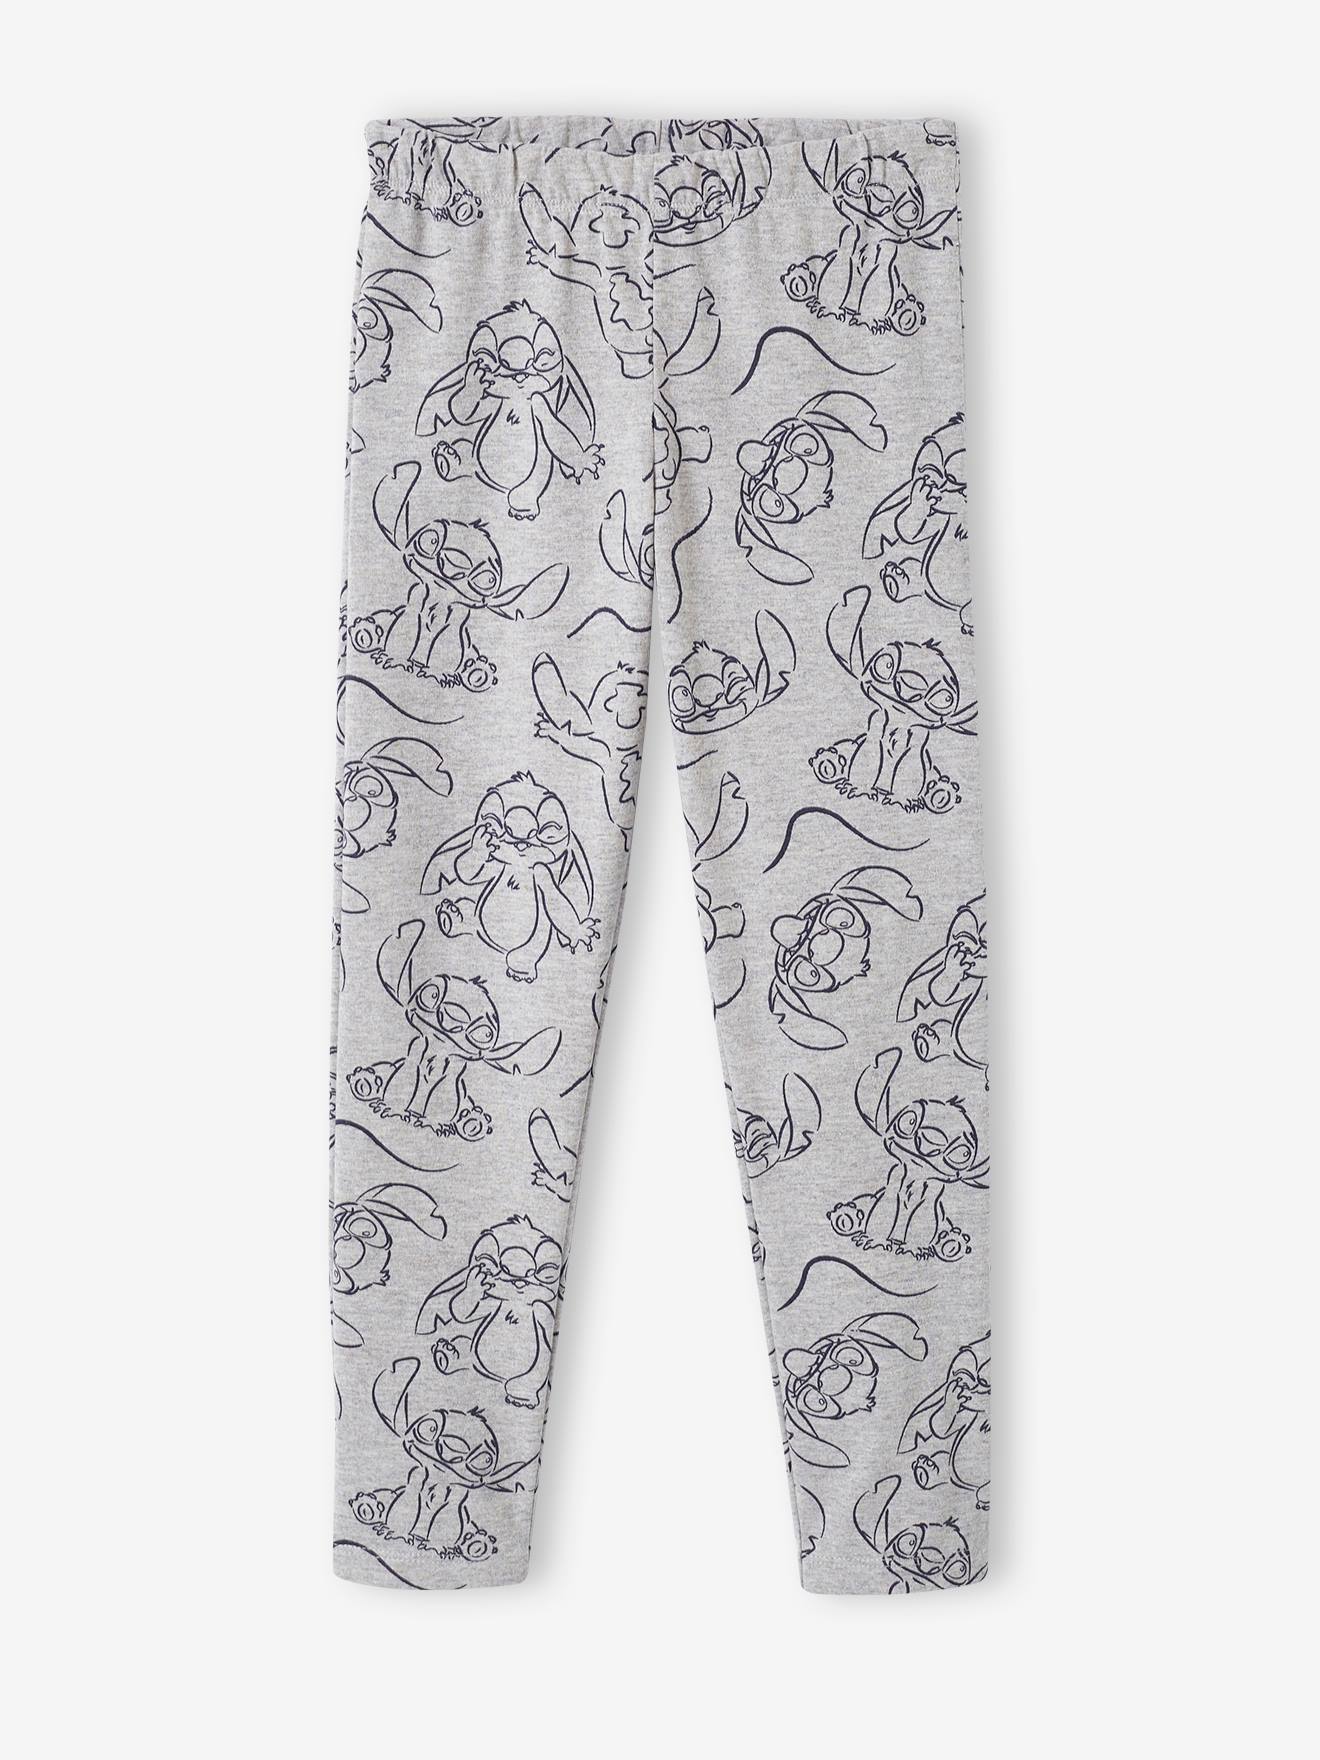 Pyjama Stitch 5 ans - Disney - 5 ans